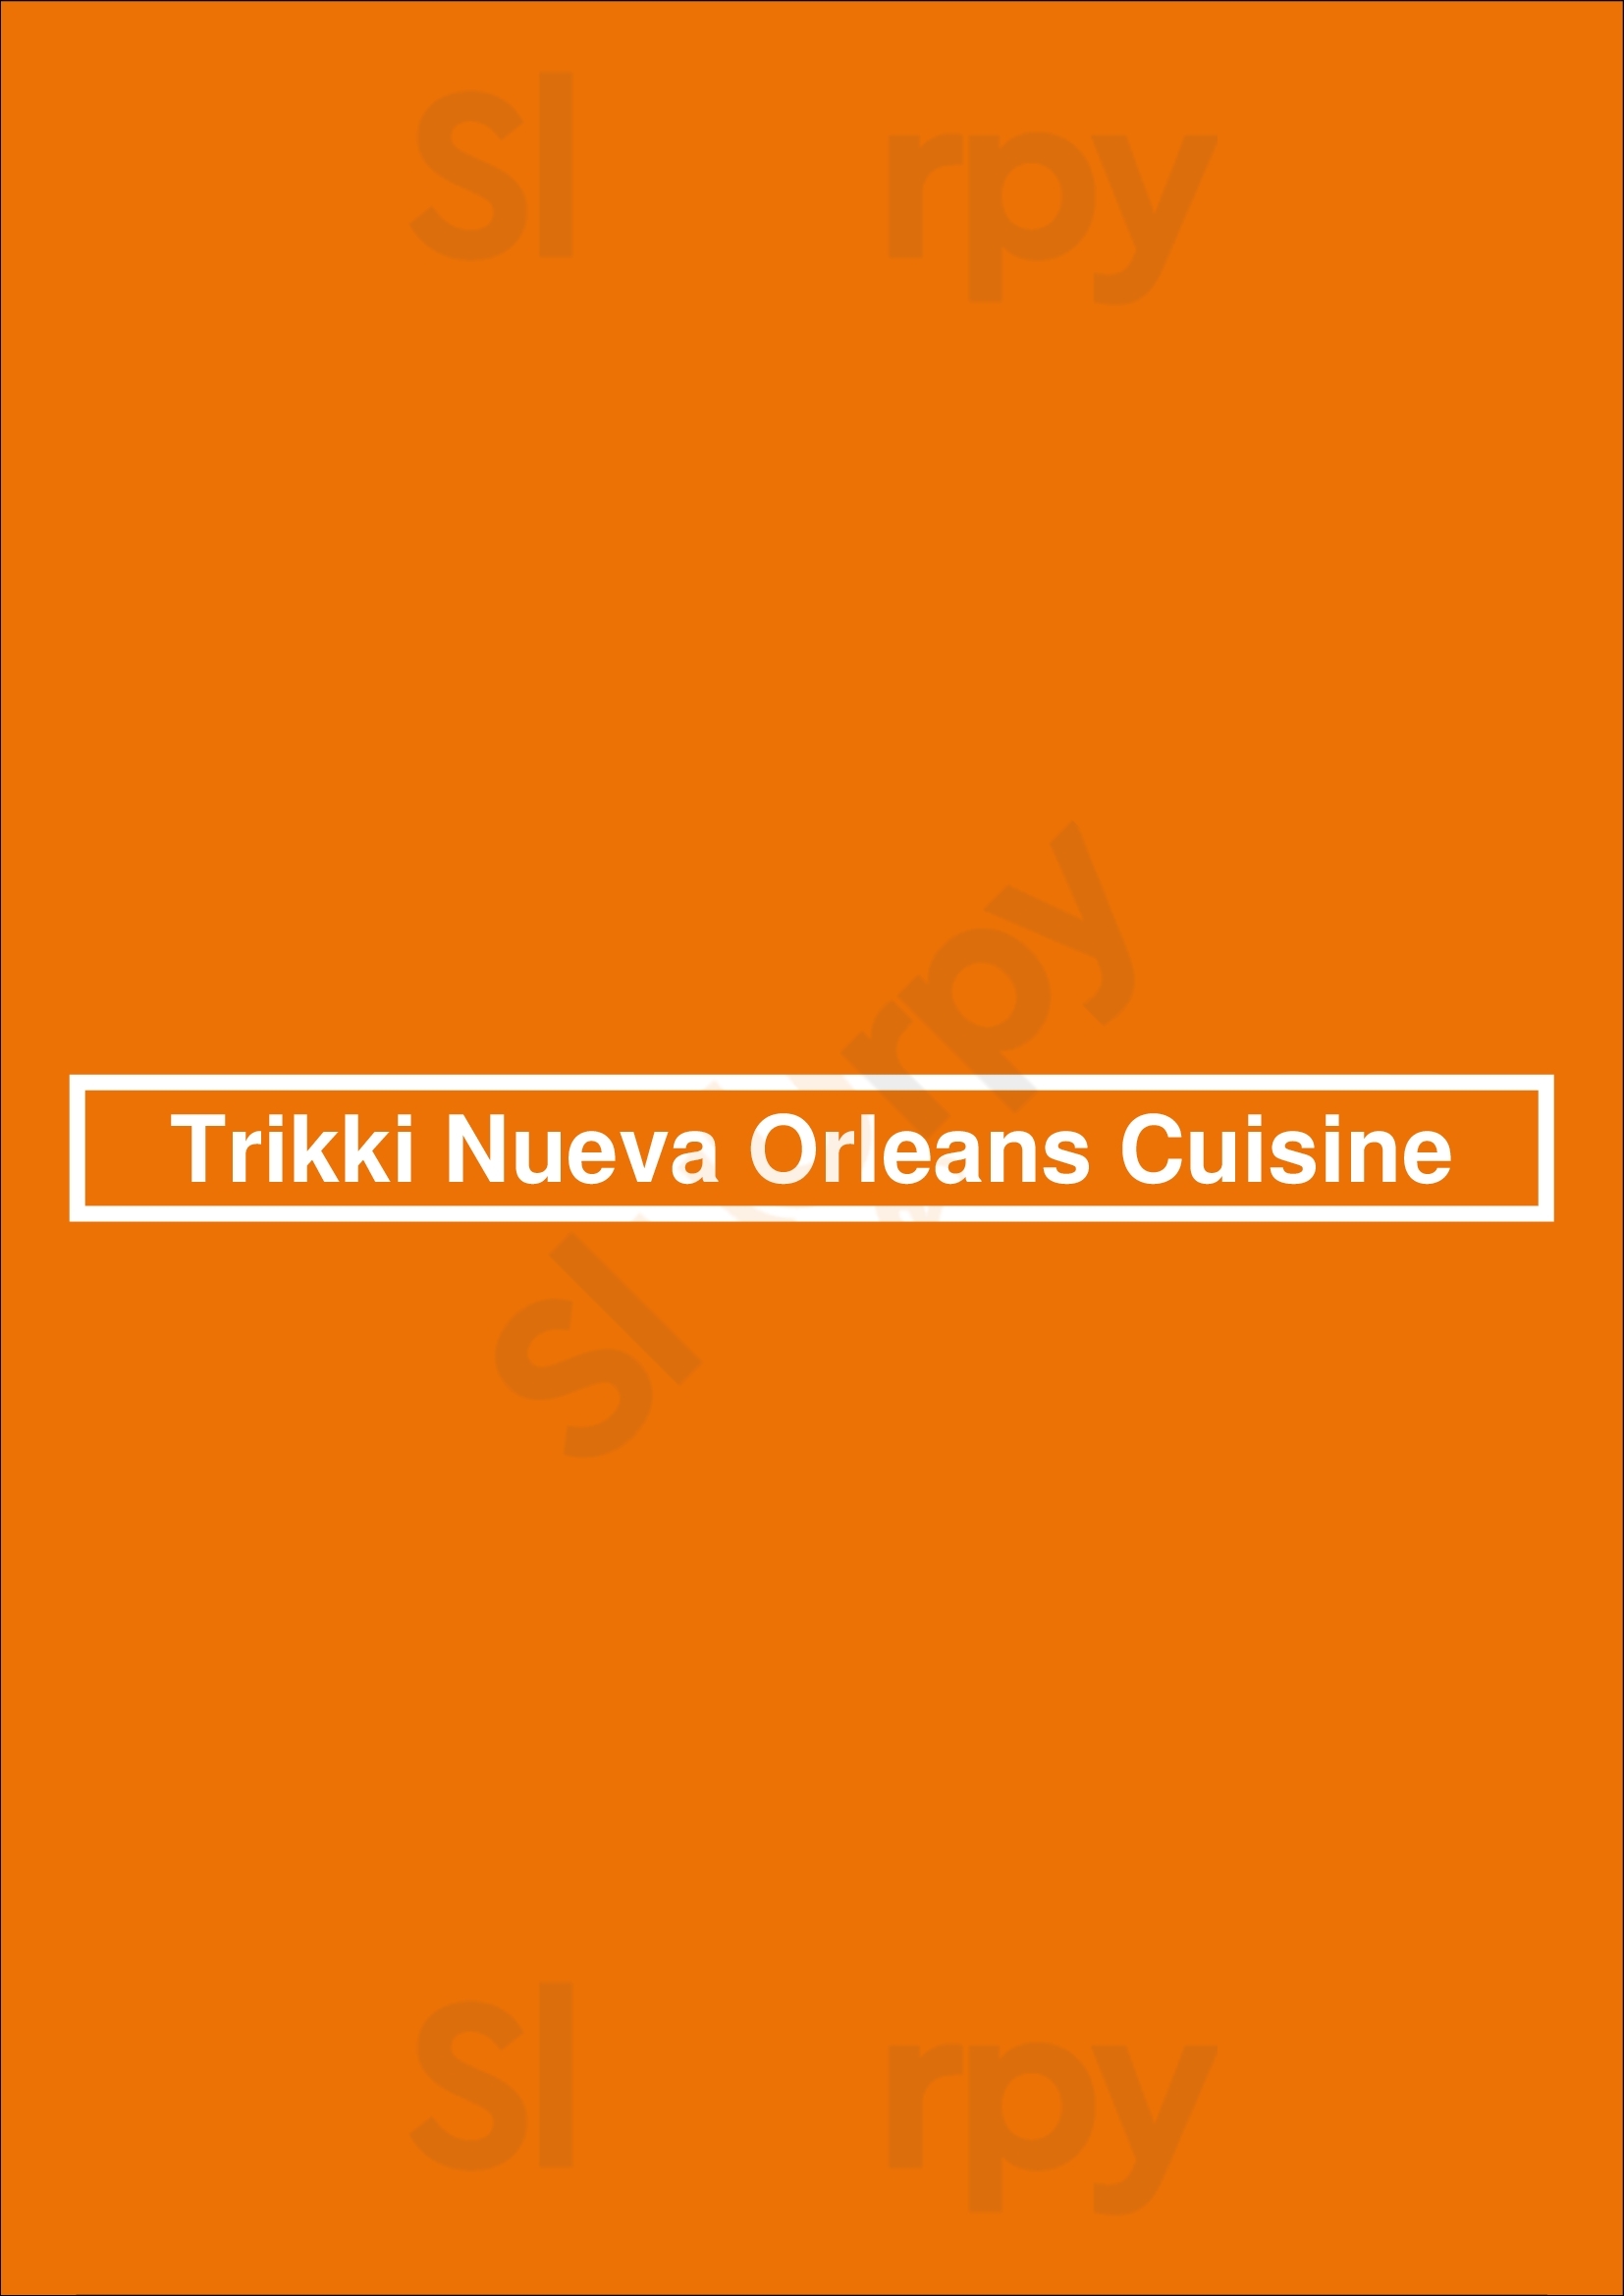 Trikki Nueva Orleans Cuisine Madrid Menu - 1